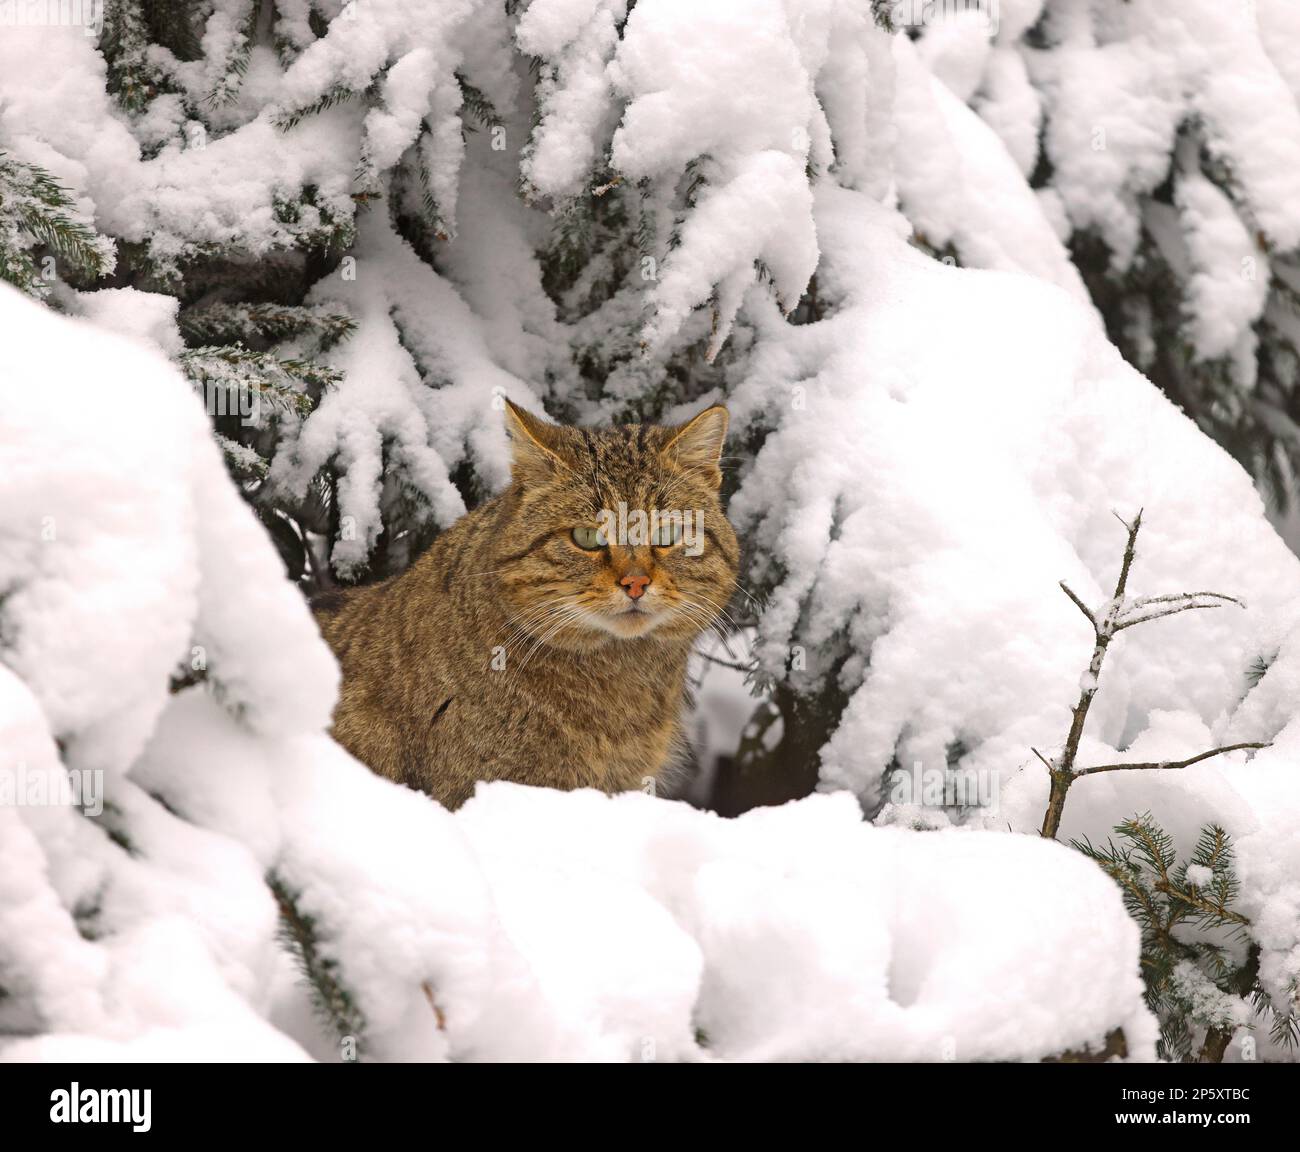 wild cat (Felis silvestris), in a snowy winter wood, Germany Stock Photo